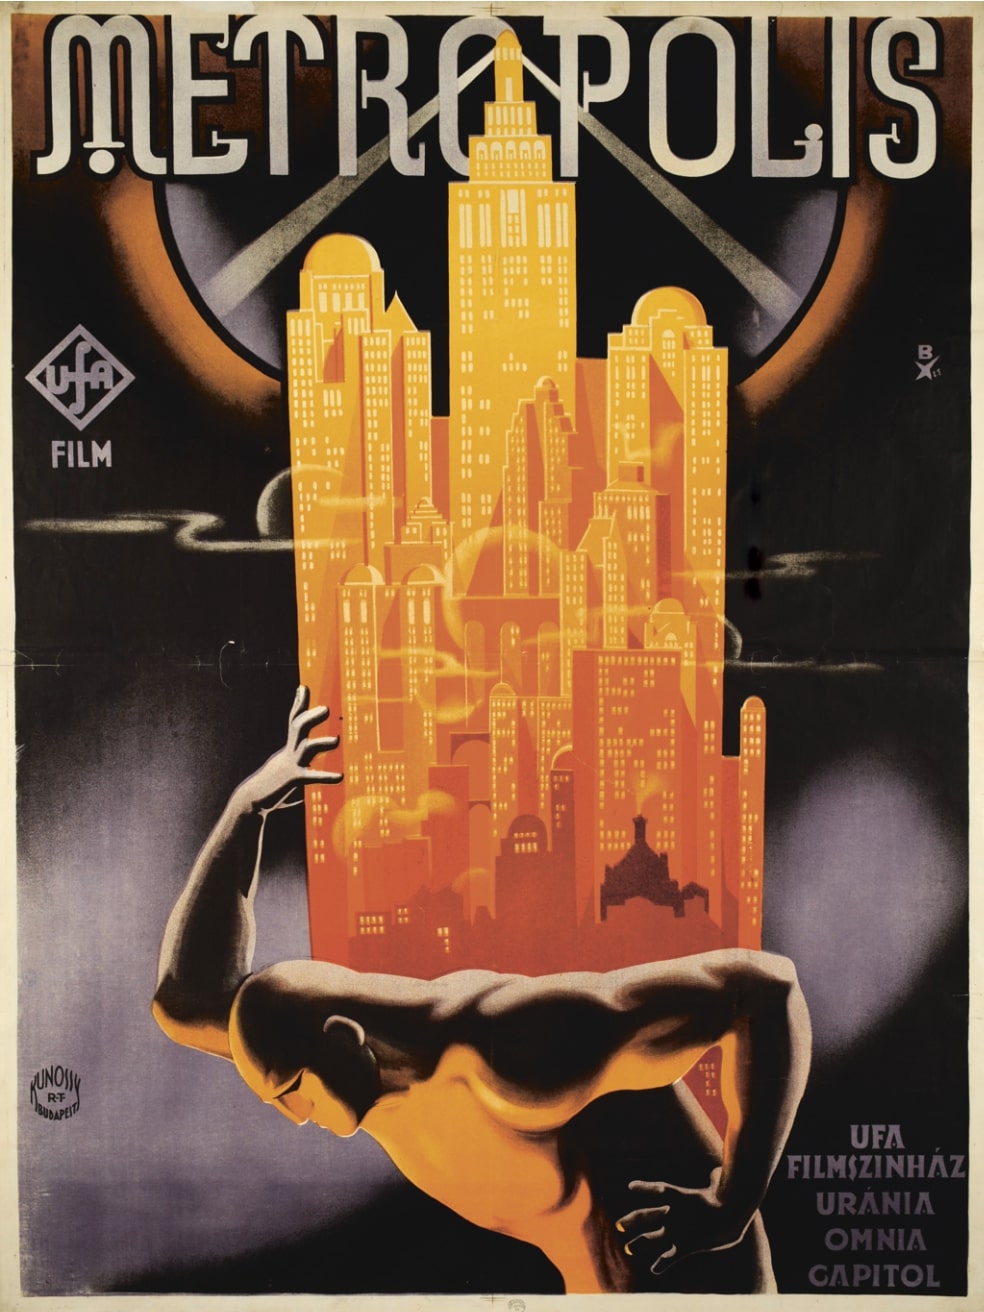 Metropolis: monumentális film, és a magyar plakátművészet egyik csúcspontja (OSZK PKT / PKG.1928/4) © Országos Széchényi Könyvtár